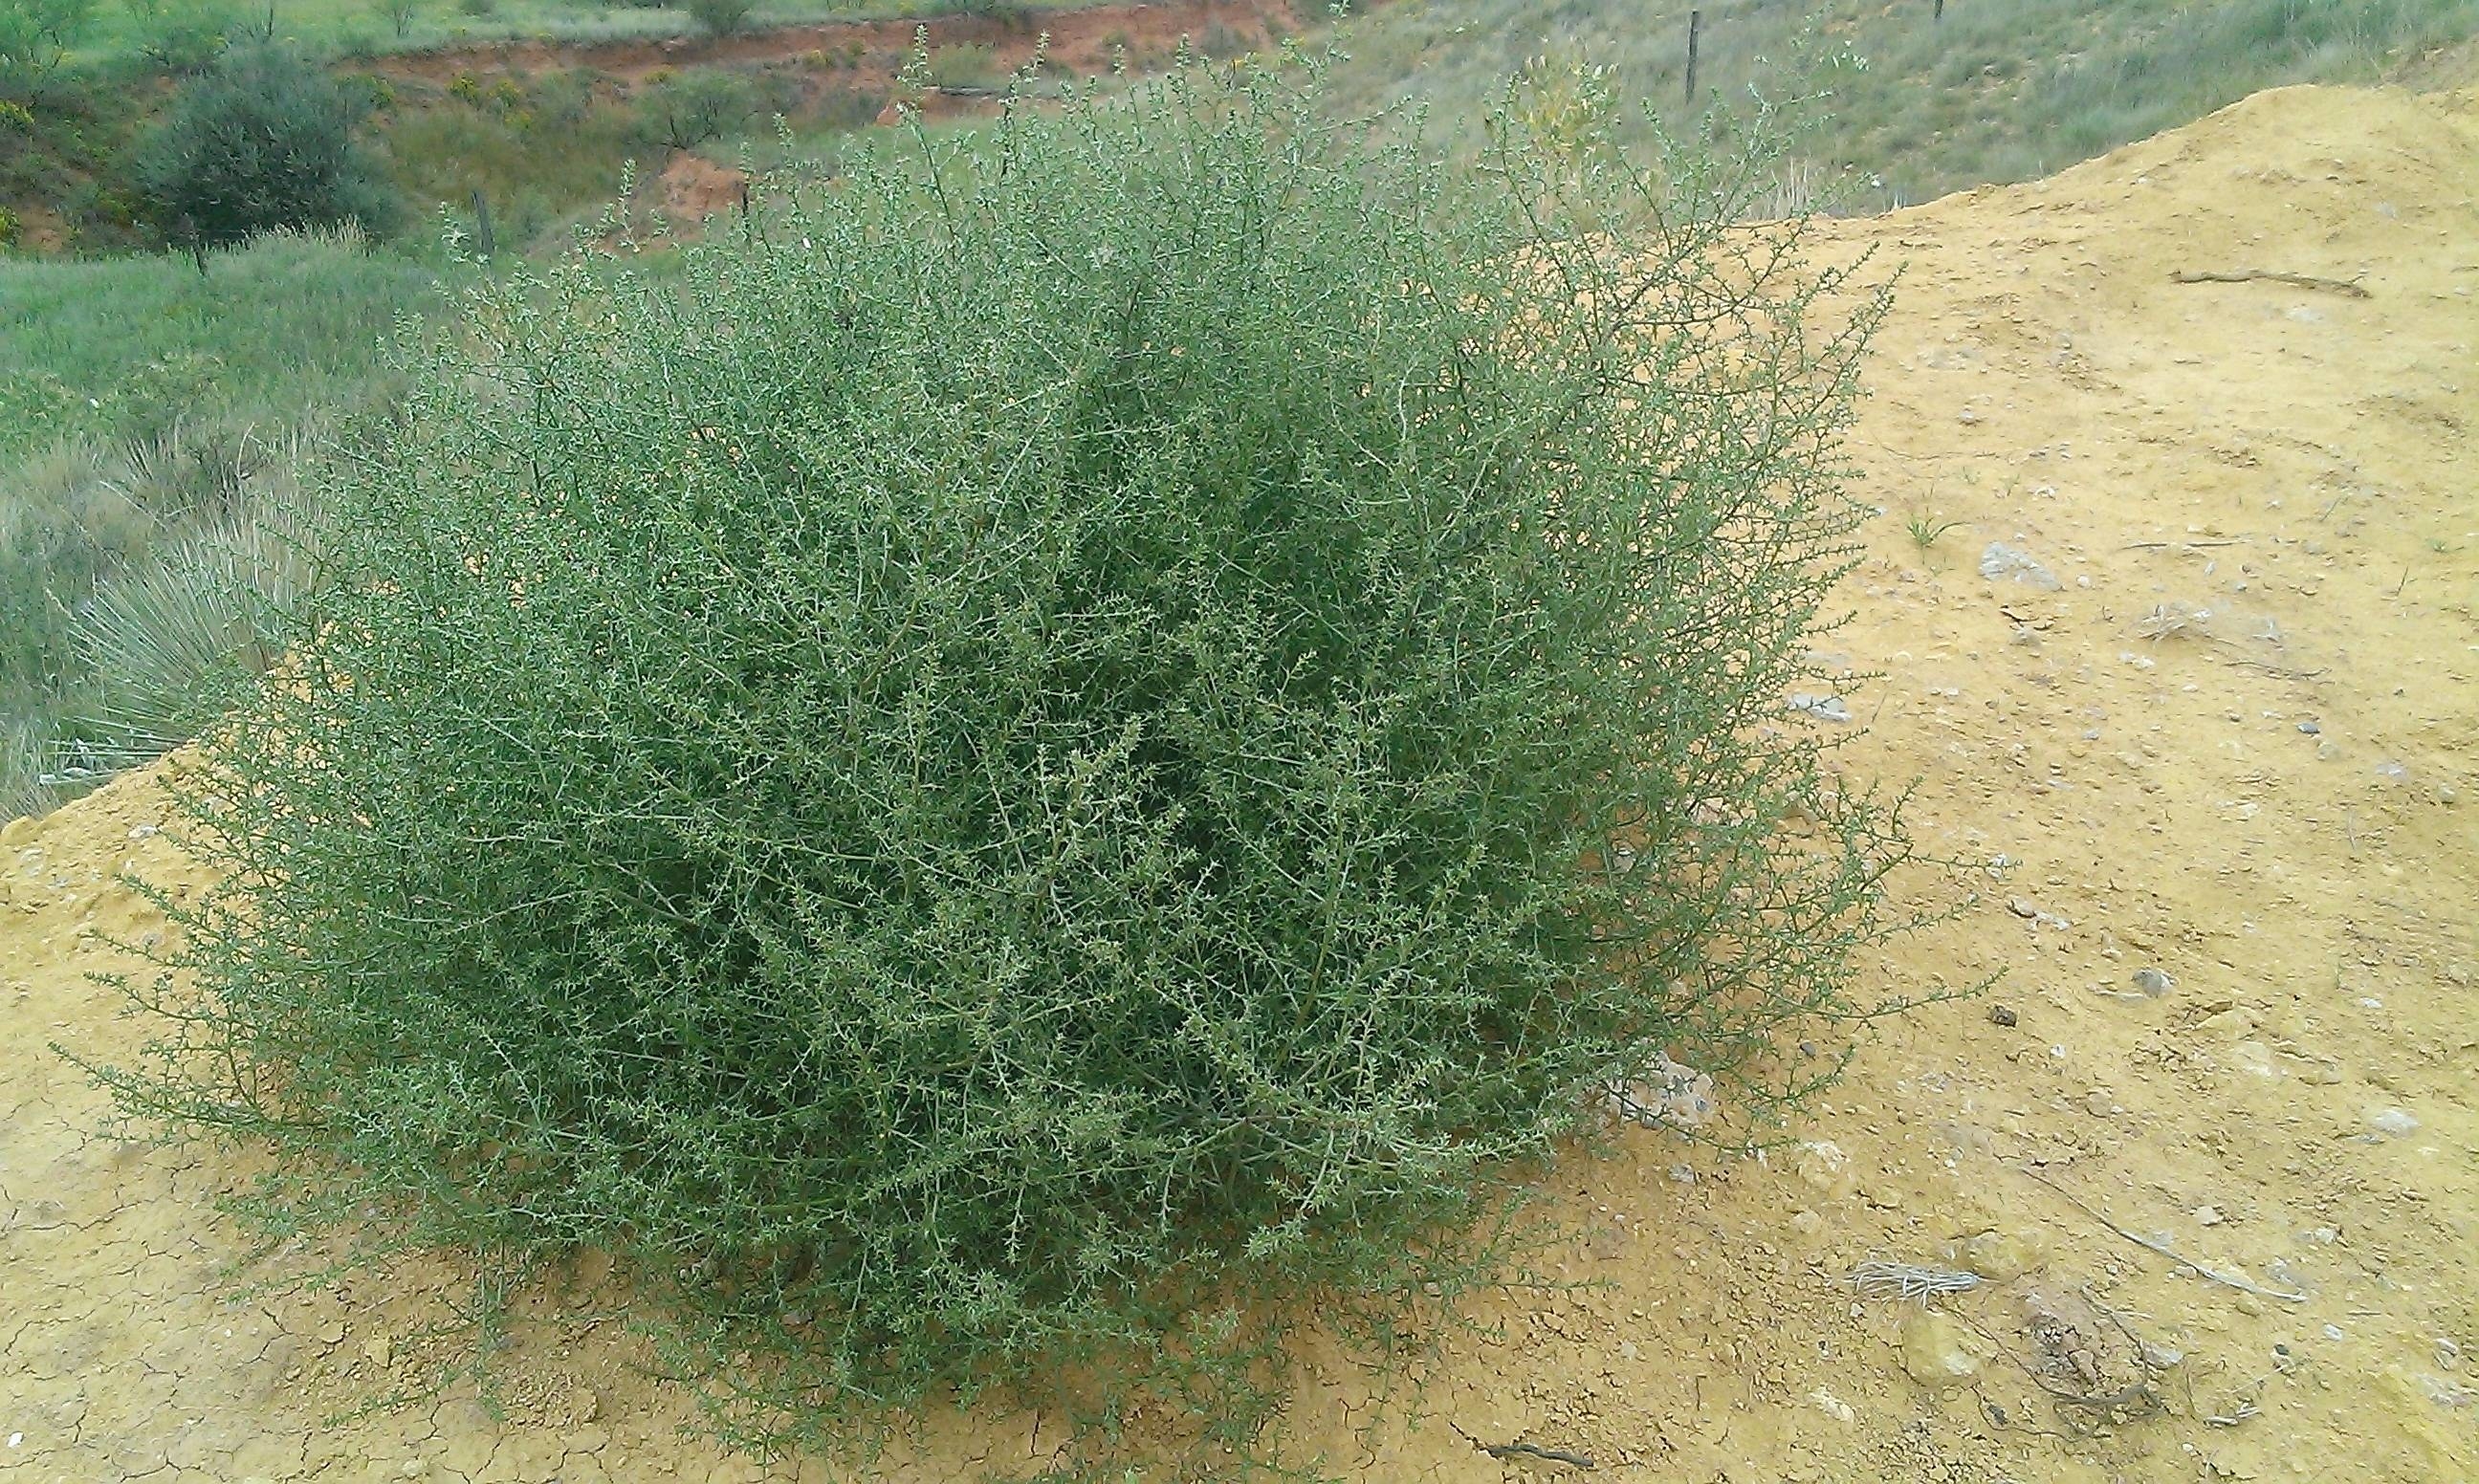 A fresh tumbleweed